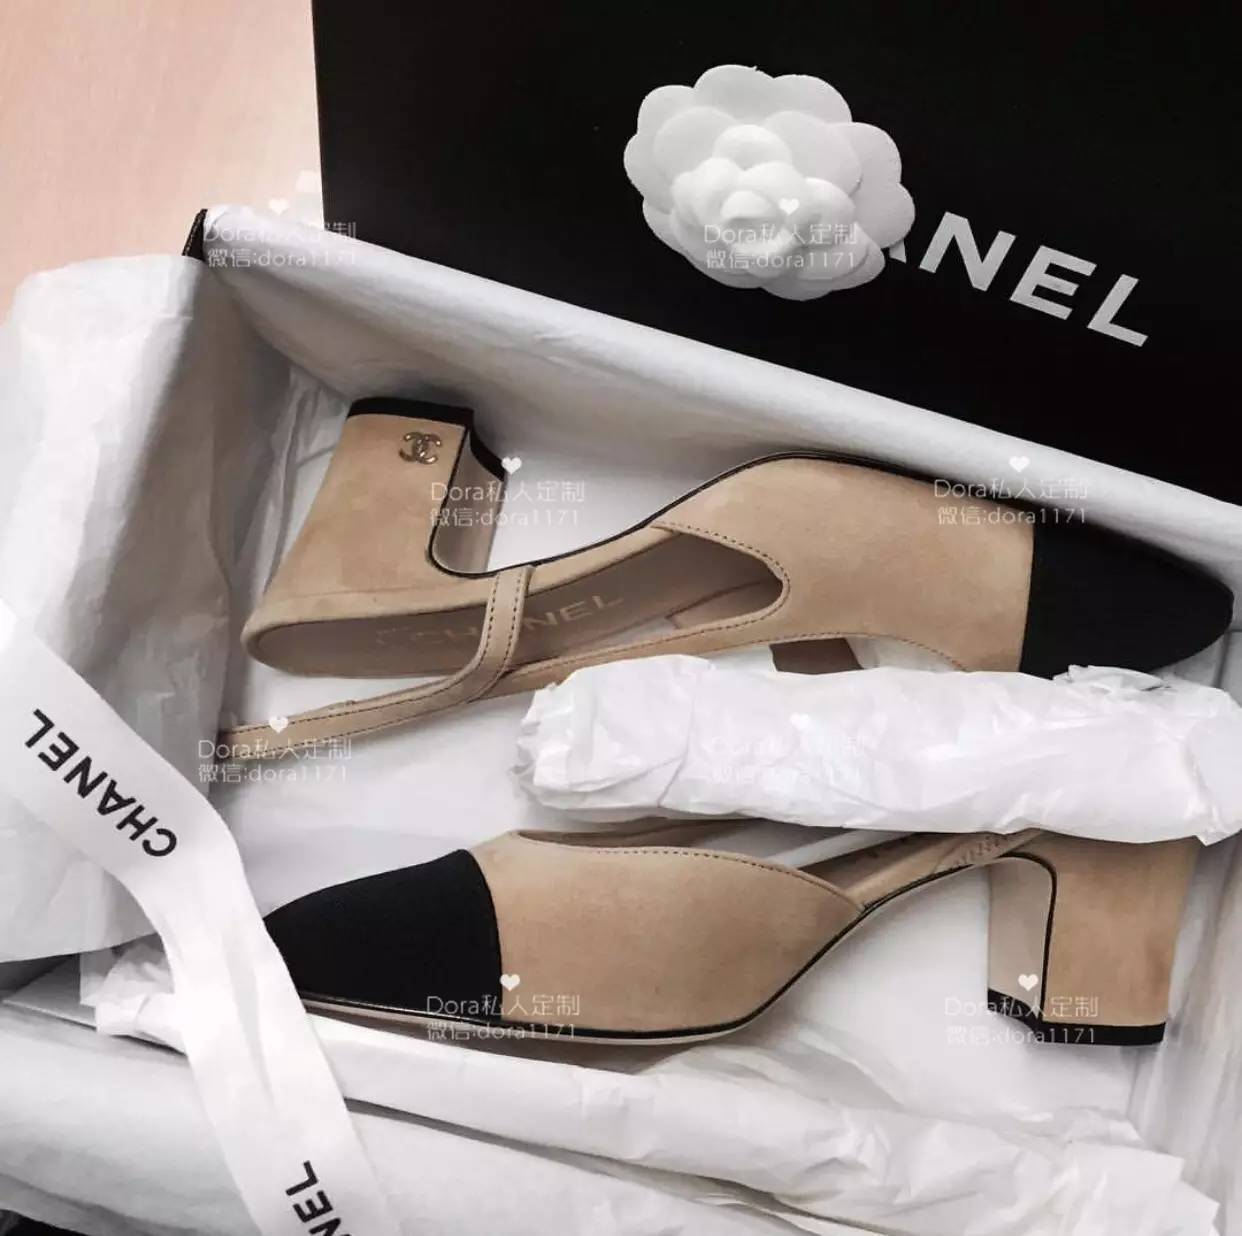 Chanel香奈儿双色拼色鞋--一双鞋搞定所有风格 百搭的经典双色鞋_搜狐时尚_搜狐网